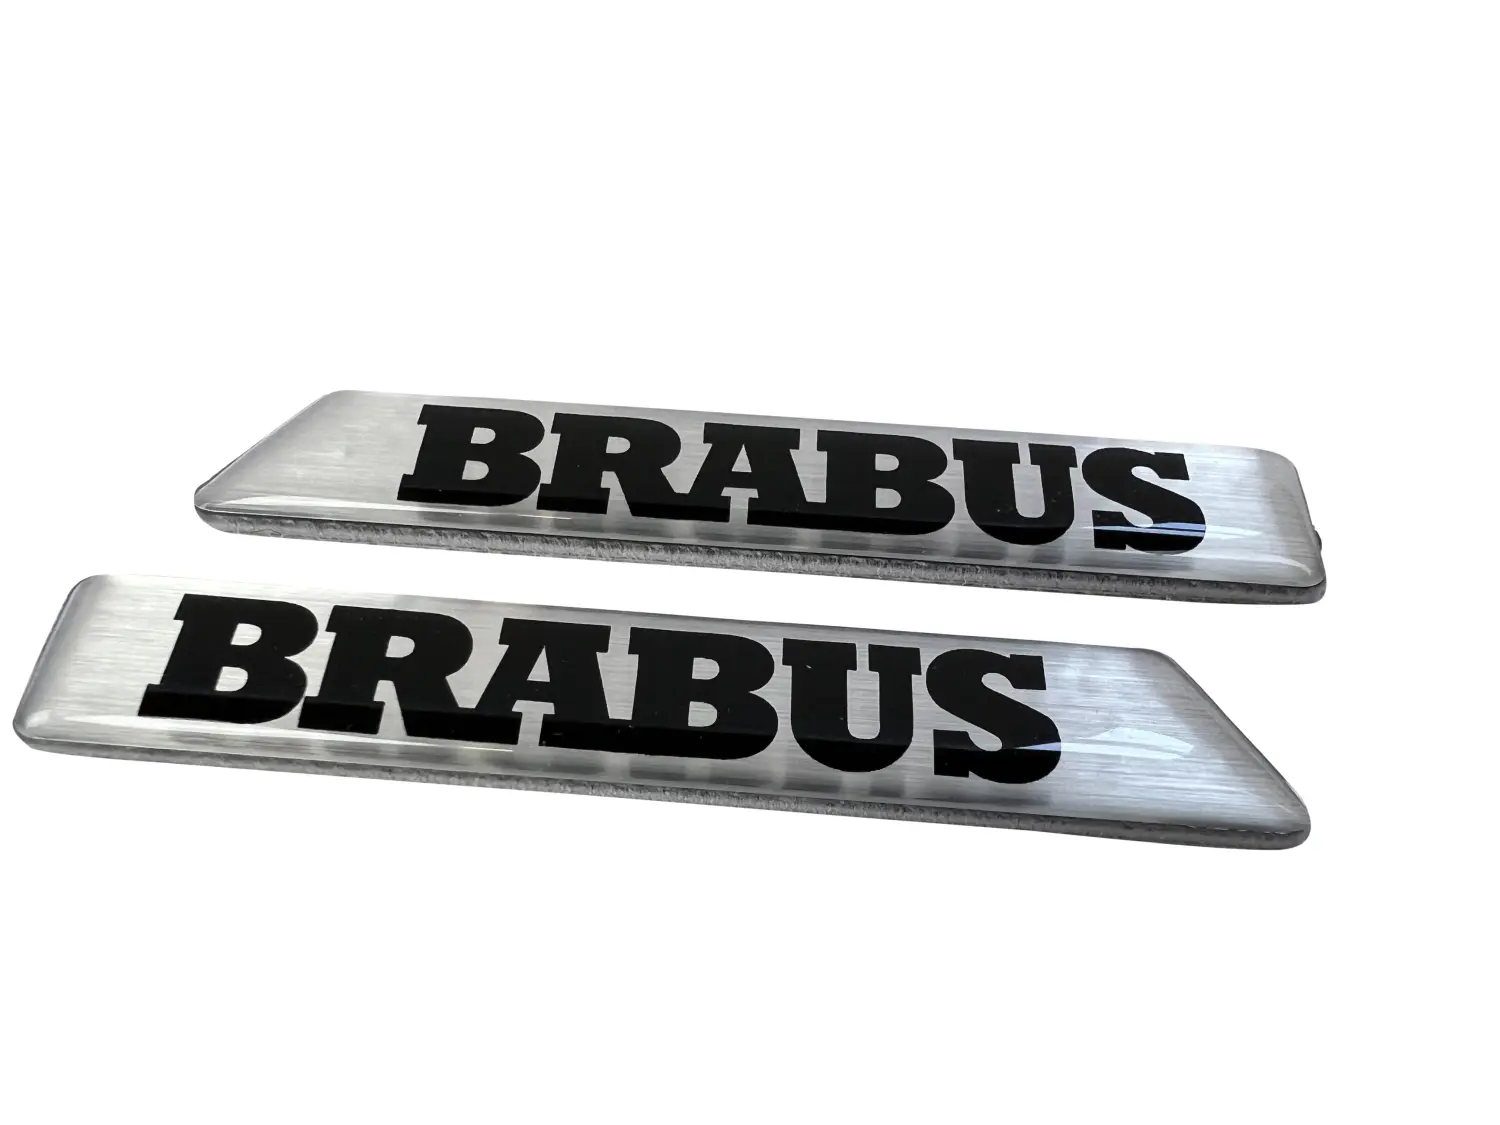 https://rs-original-carsupply.eu/media/image/4b/ec/4d/Brabus-Emblem-Seite-Silber_003.webp